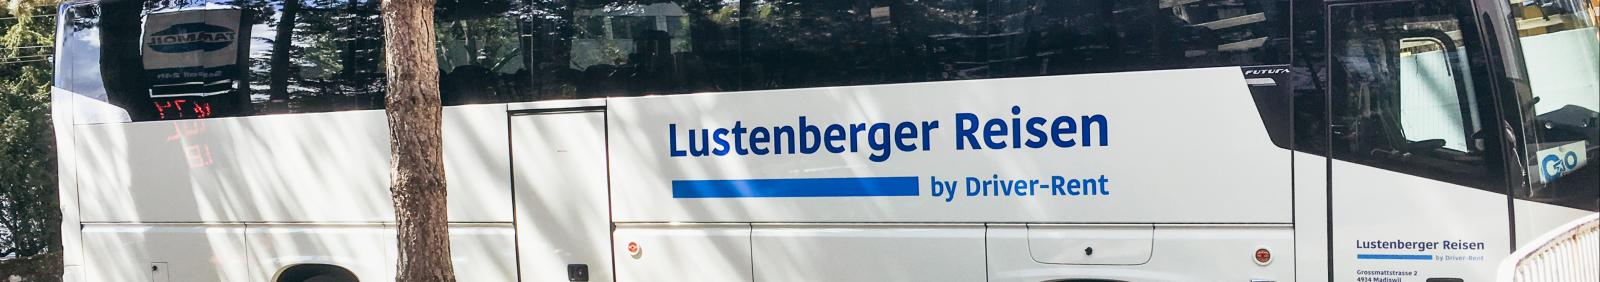 Bilder Lustenberger-Reisen